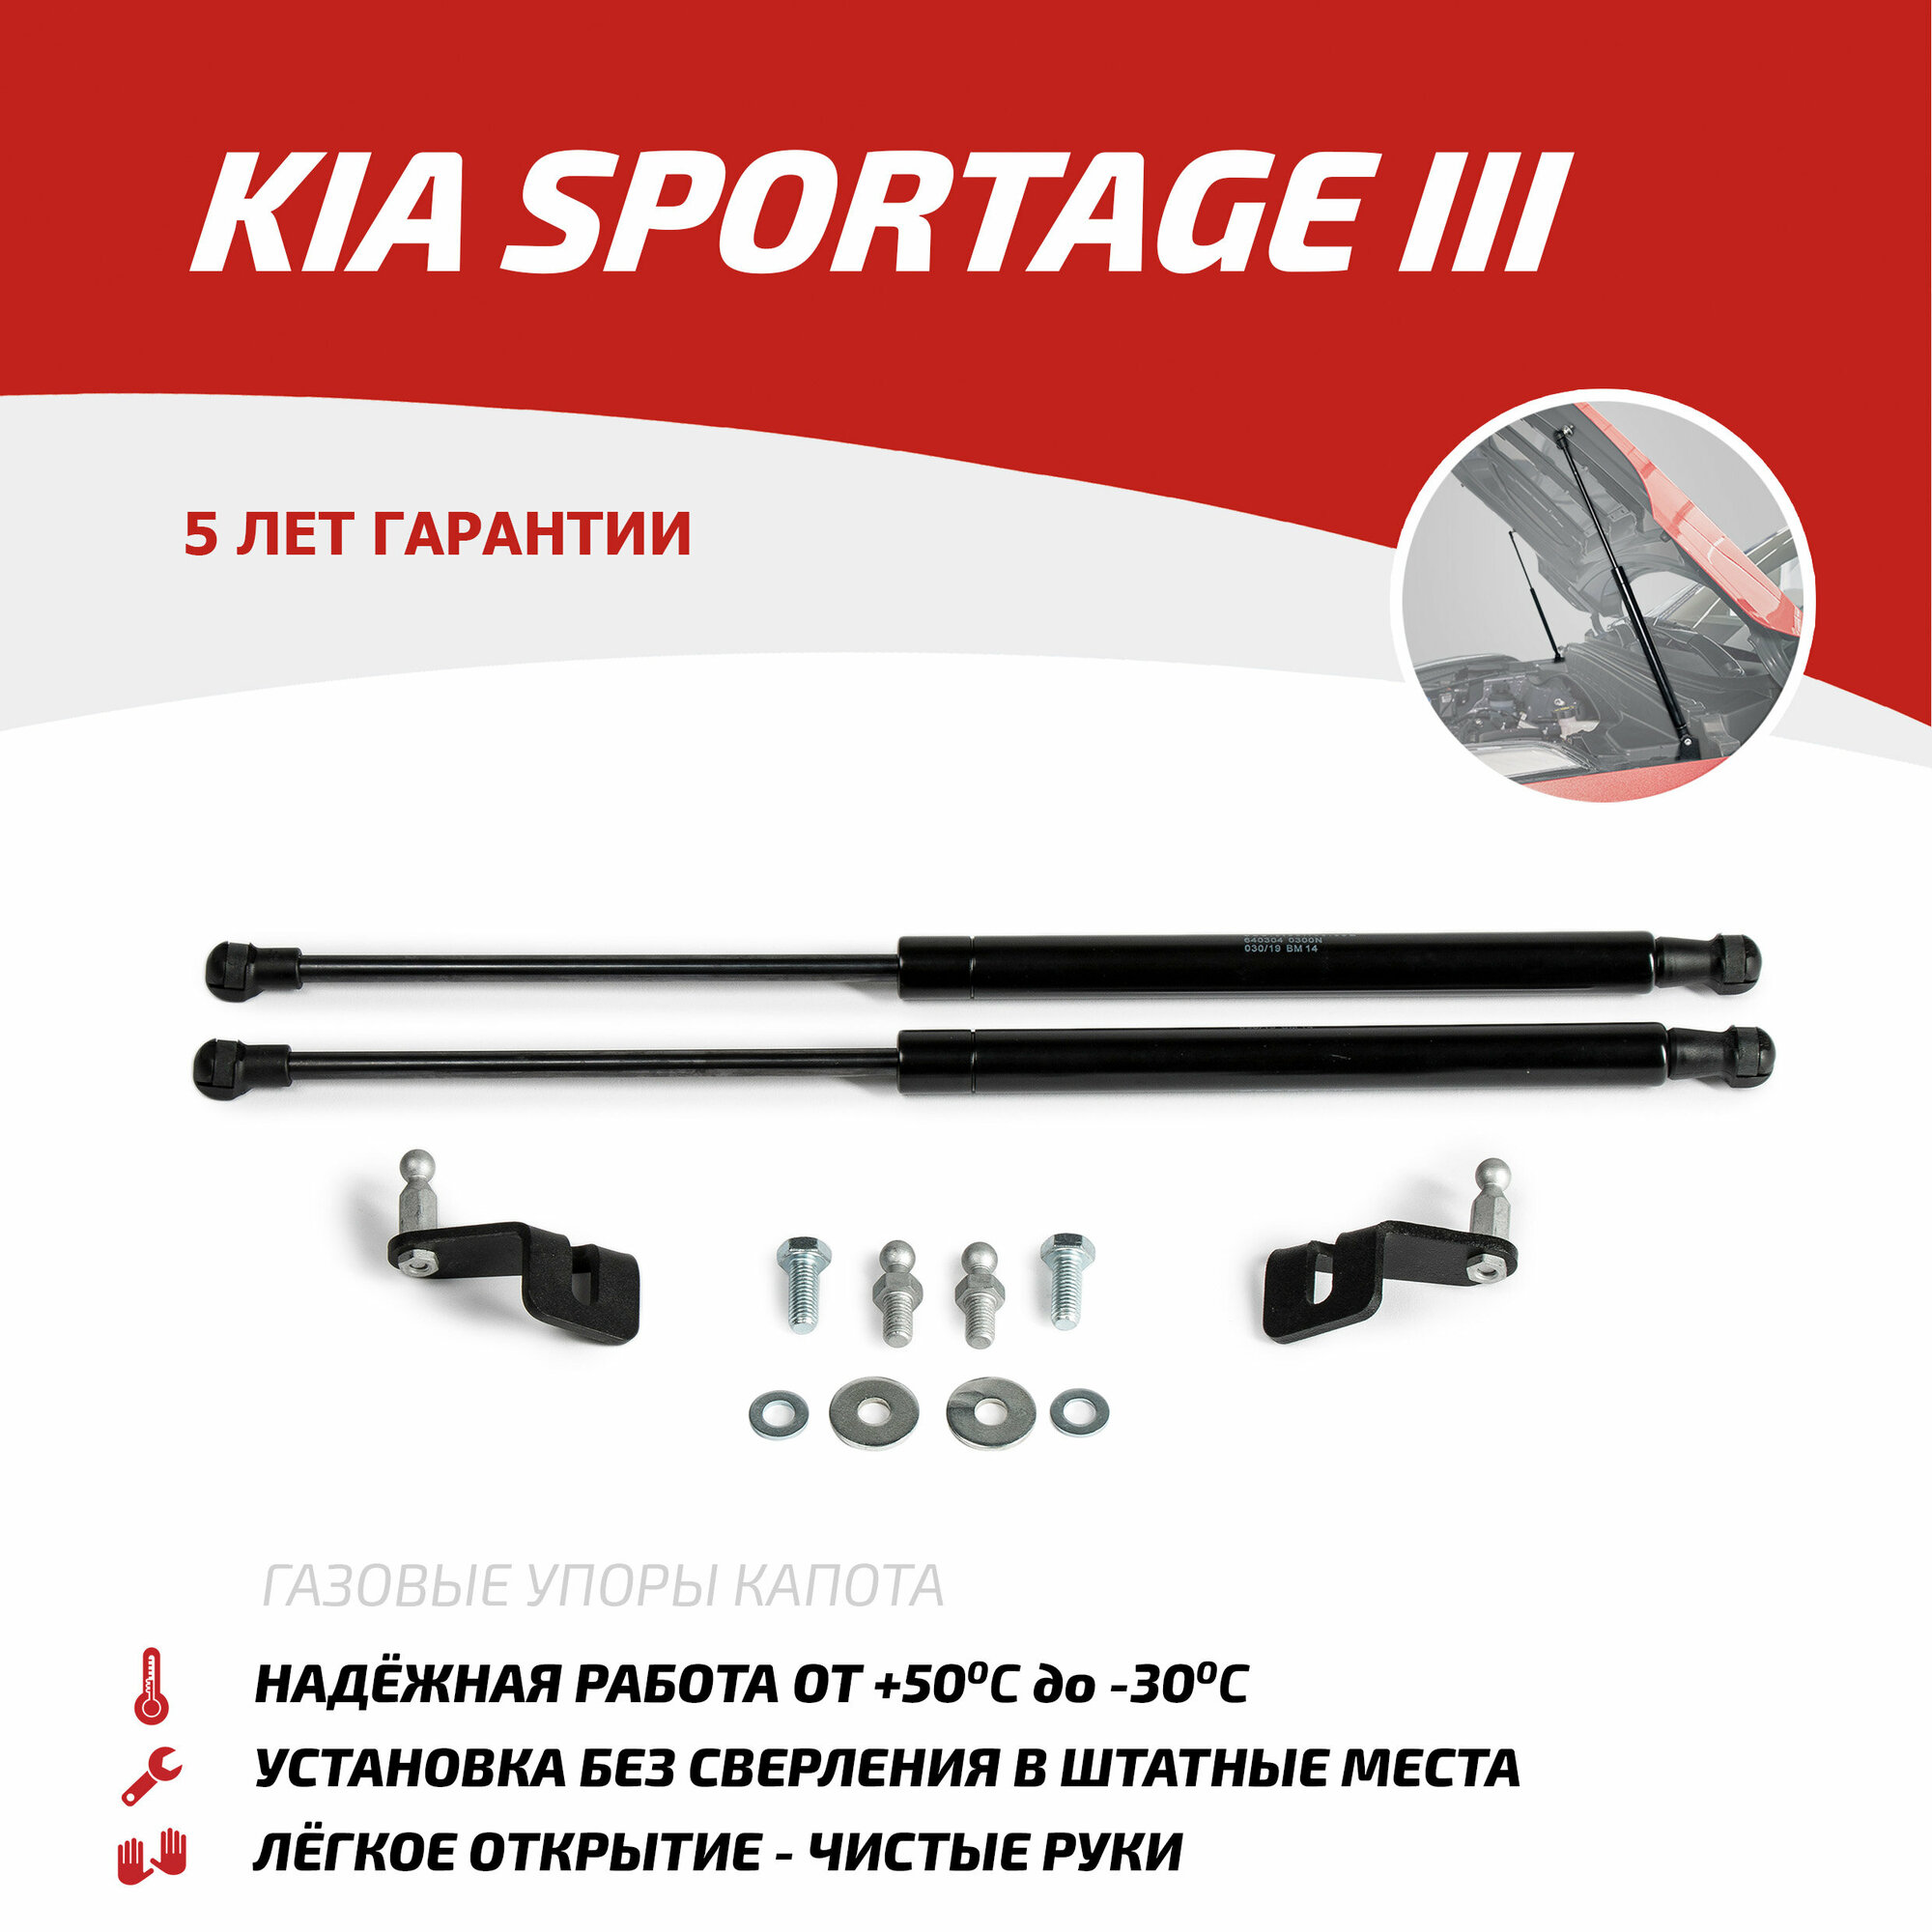 Газовые упоры капота АвтоУпор для Kia Sportage III 2010-2016, 2 шт, UKISPO011